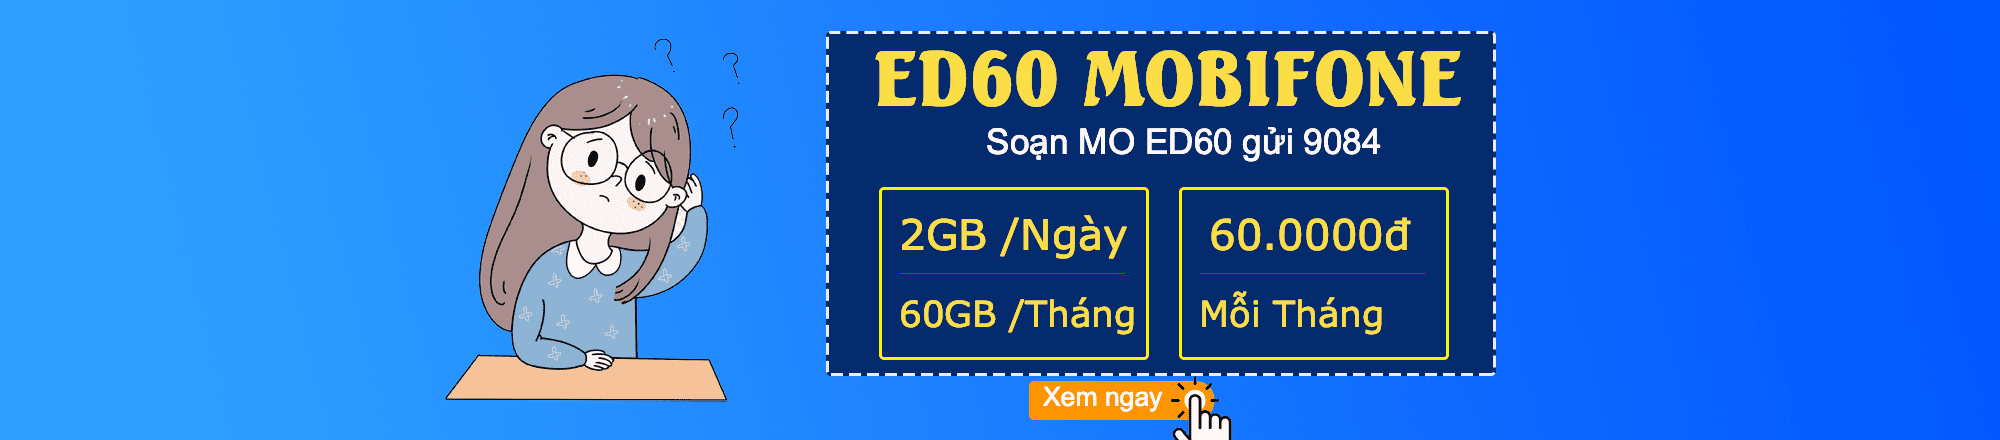 Cách đăng ký gói cước ED60 Mobifone nhạna 60GB data